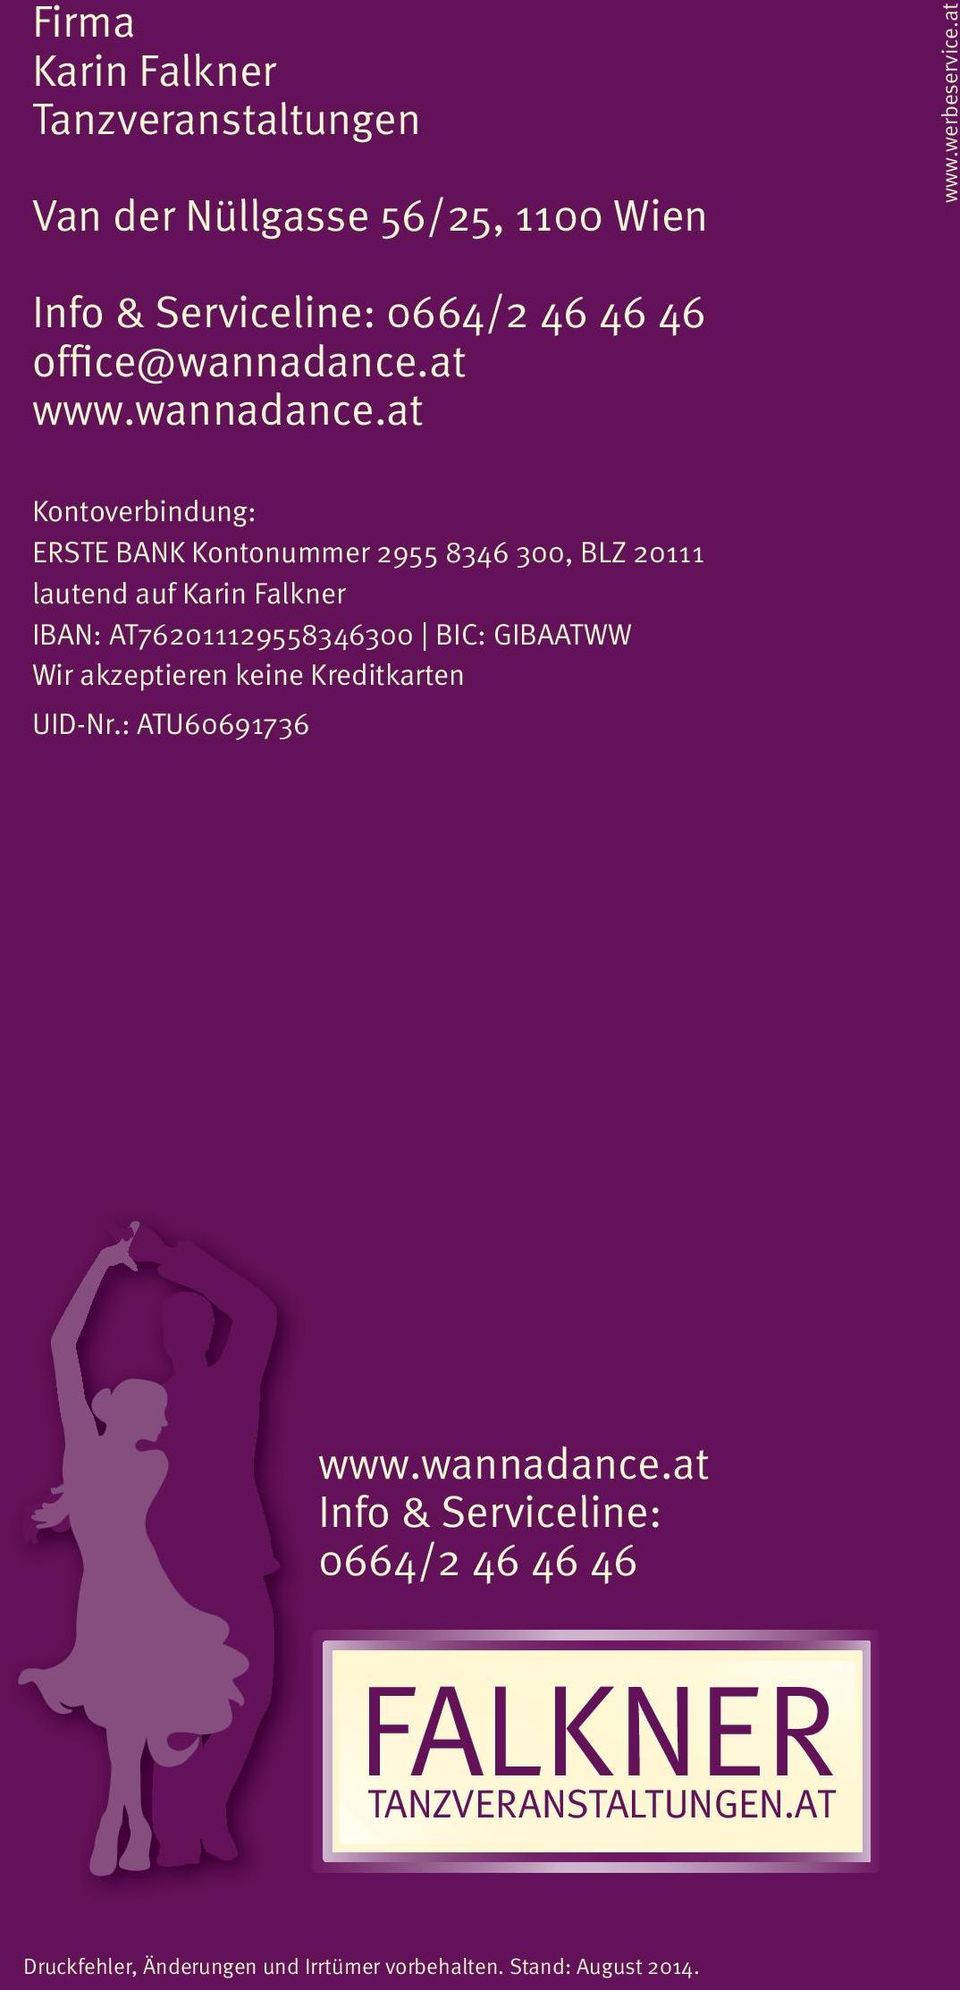 at www.wannadance.